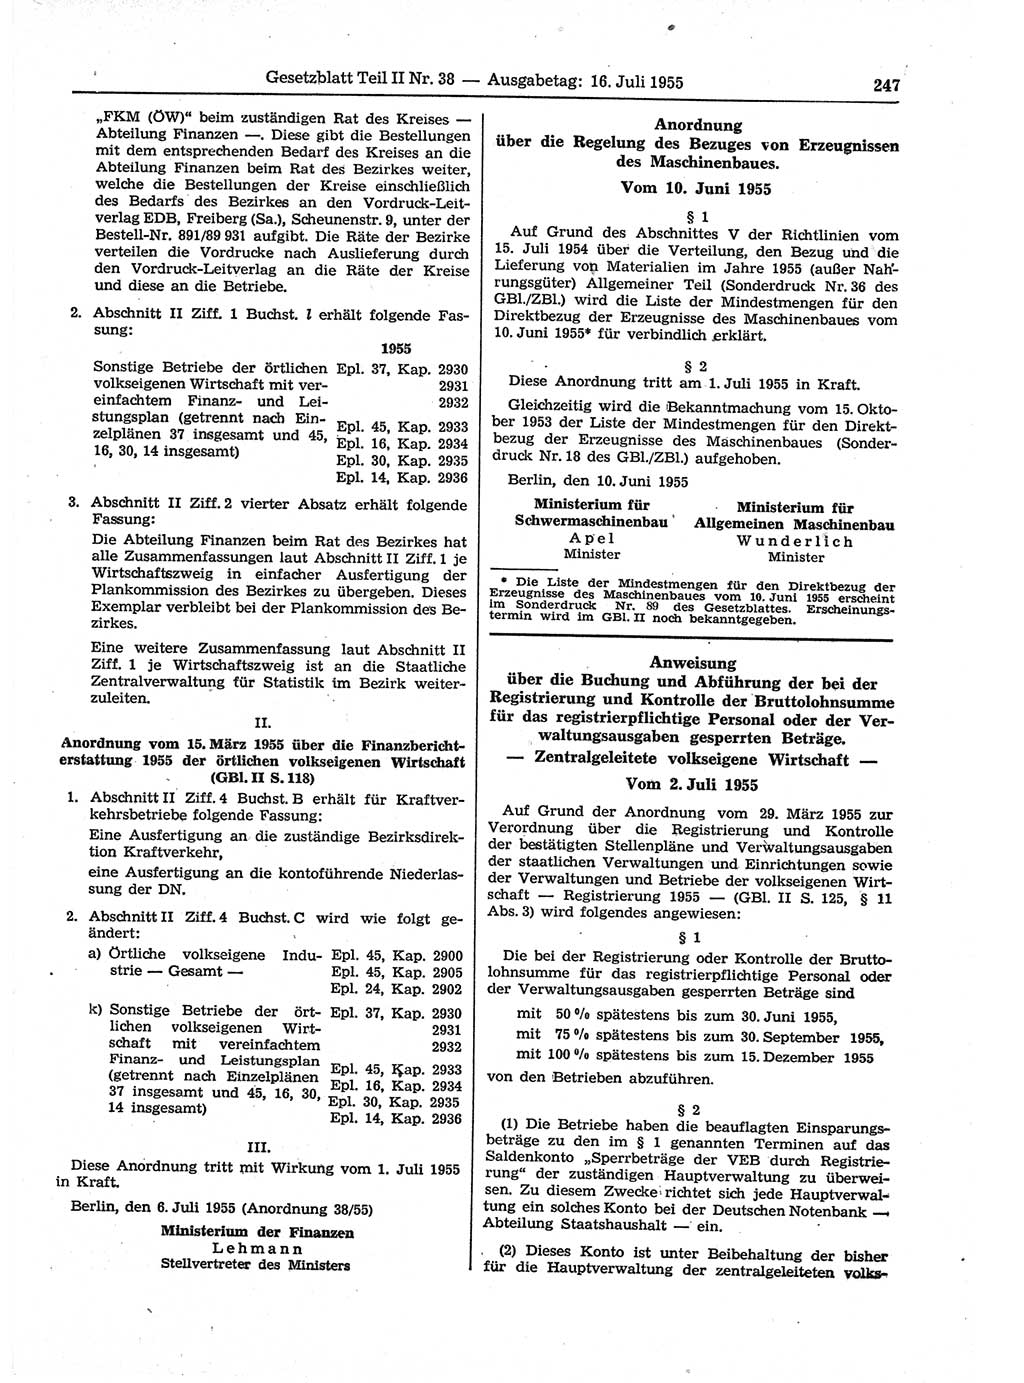 Gesetzblatt (GBl.) der Deutschen Demokratischen Republik (DDR) Teil ⅠⅠ 1955, Seite 247 (GBl. DDR ⅠⅠ 1955, S. 247)